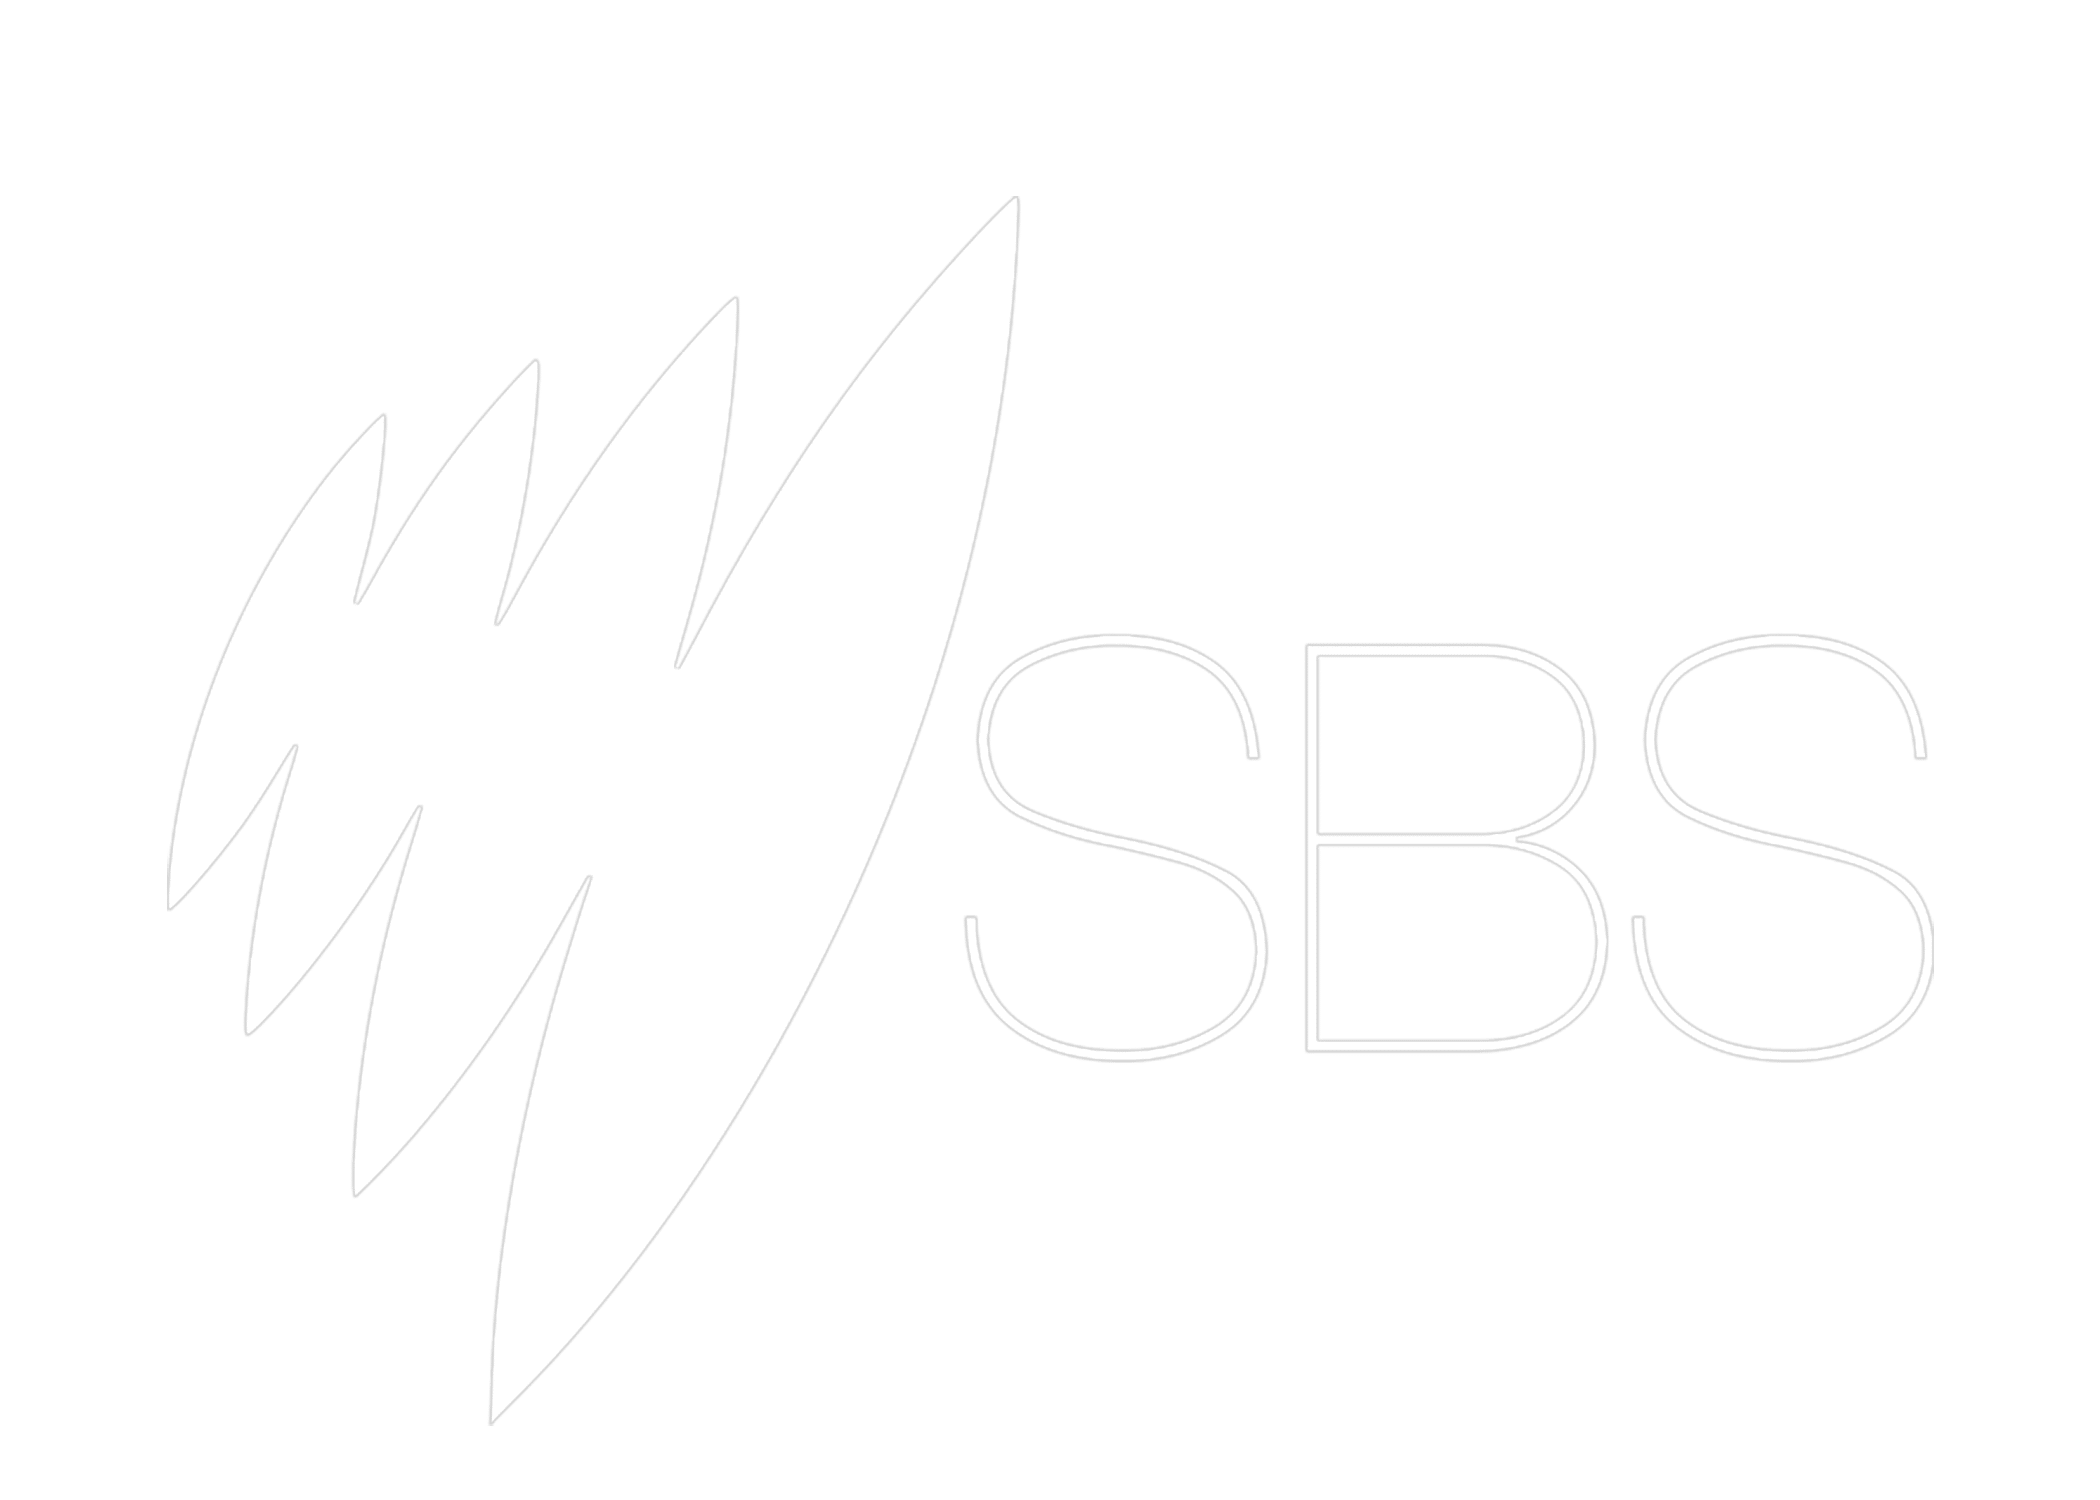 sbs sydney logo white